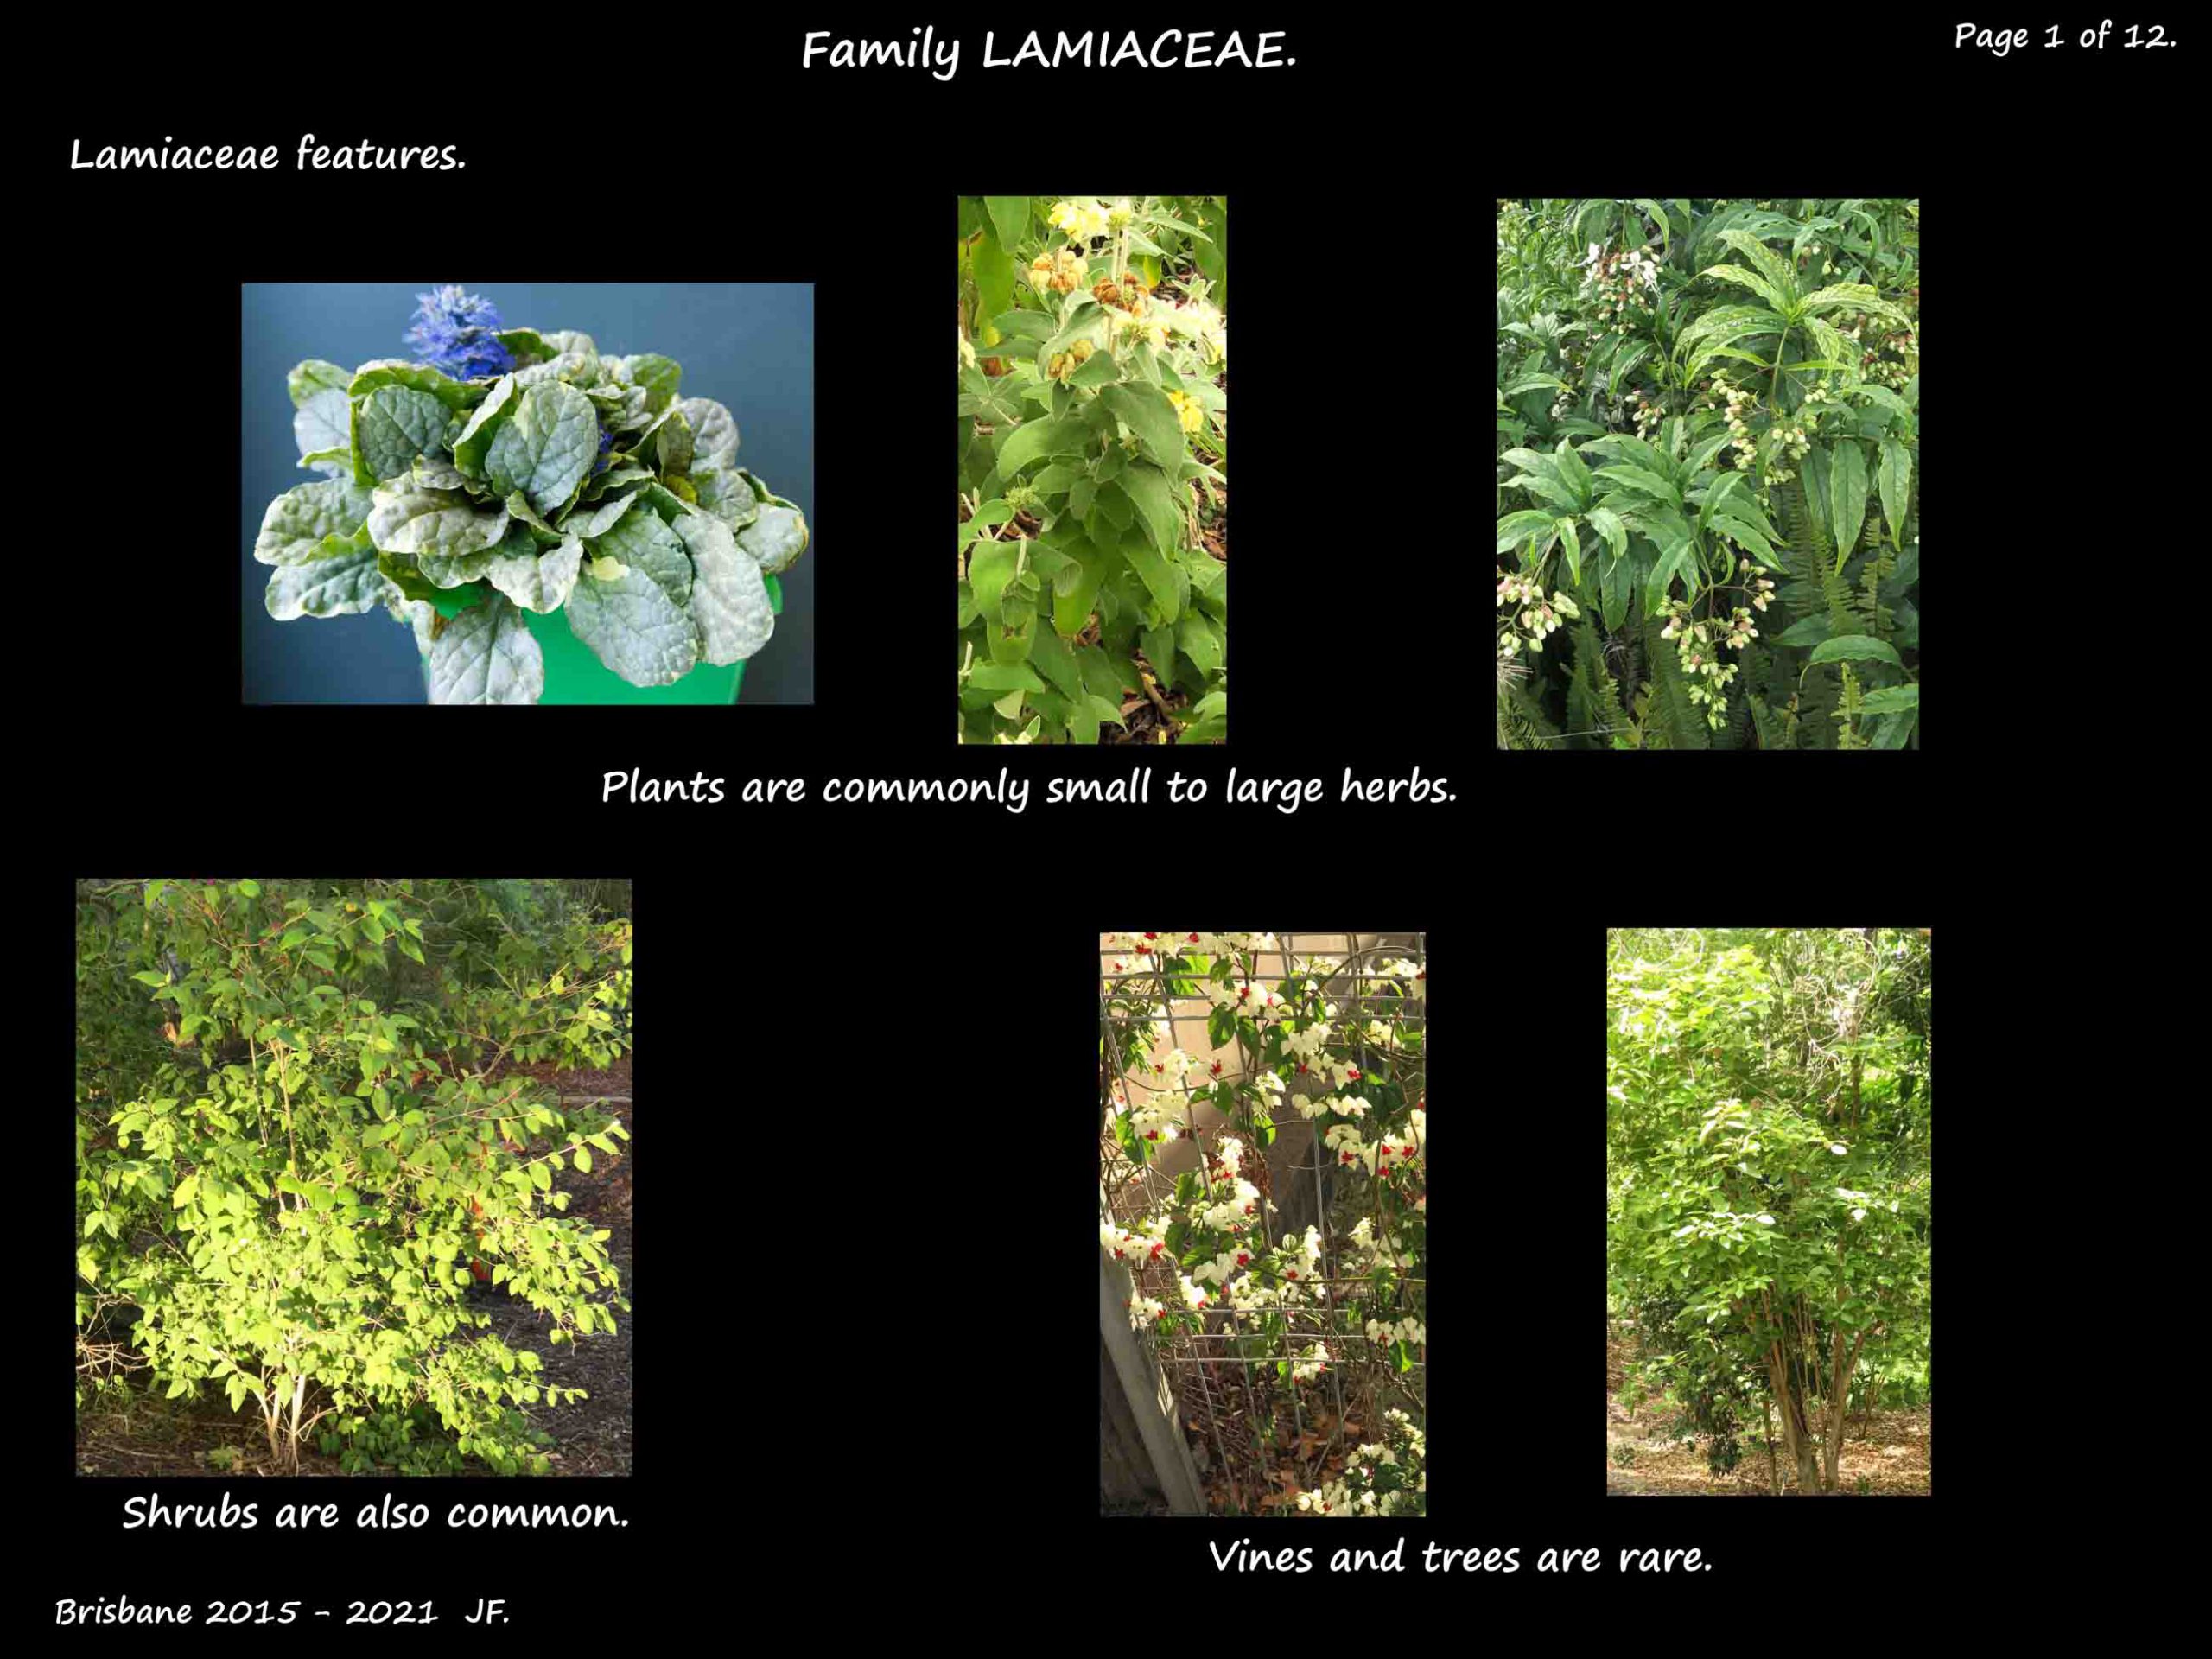 1 Lamiaceae plants